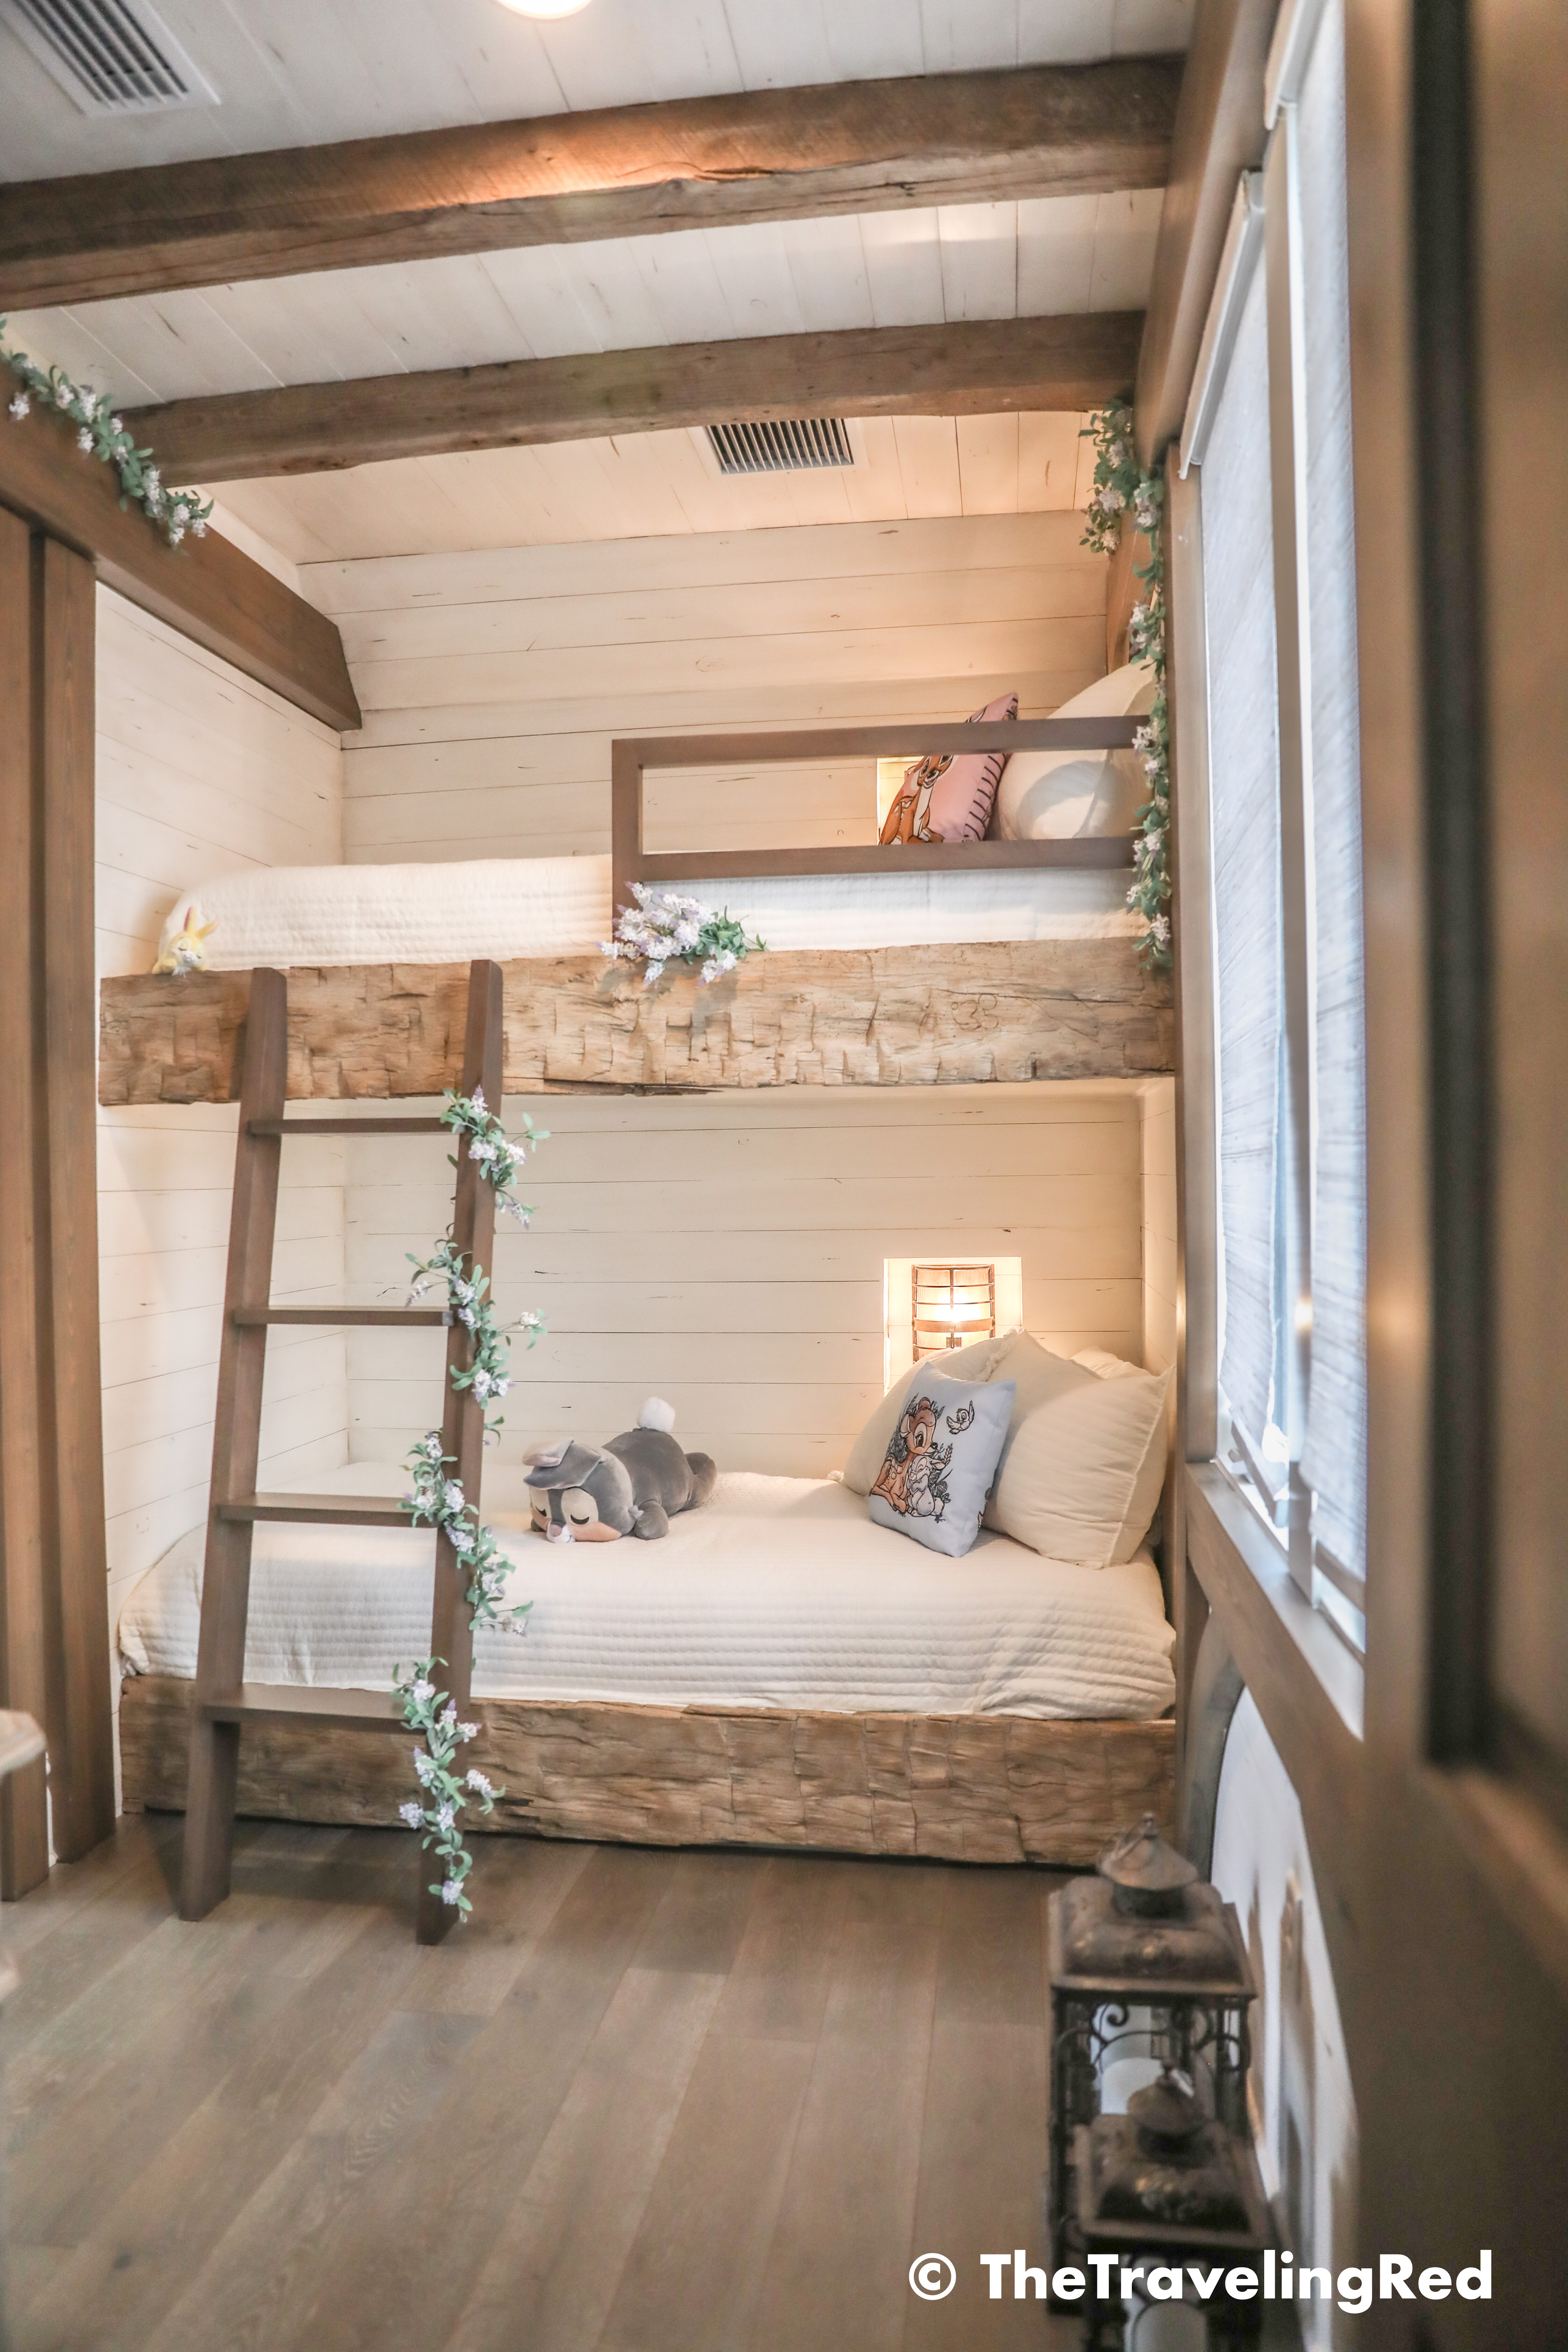 Disney Golden Oak Kids Bedroom Rustic, Rustic Built In Bunk Beds